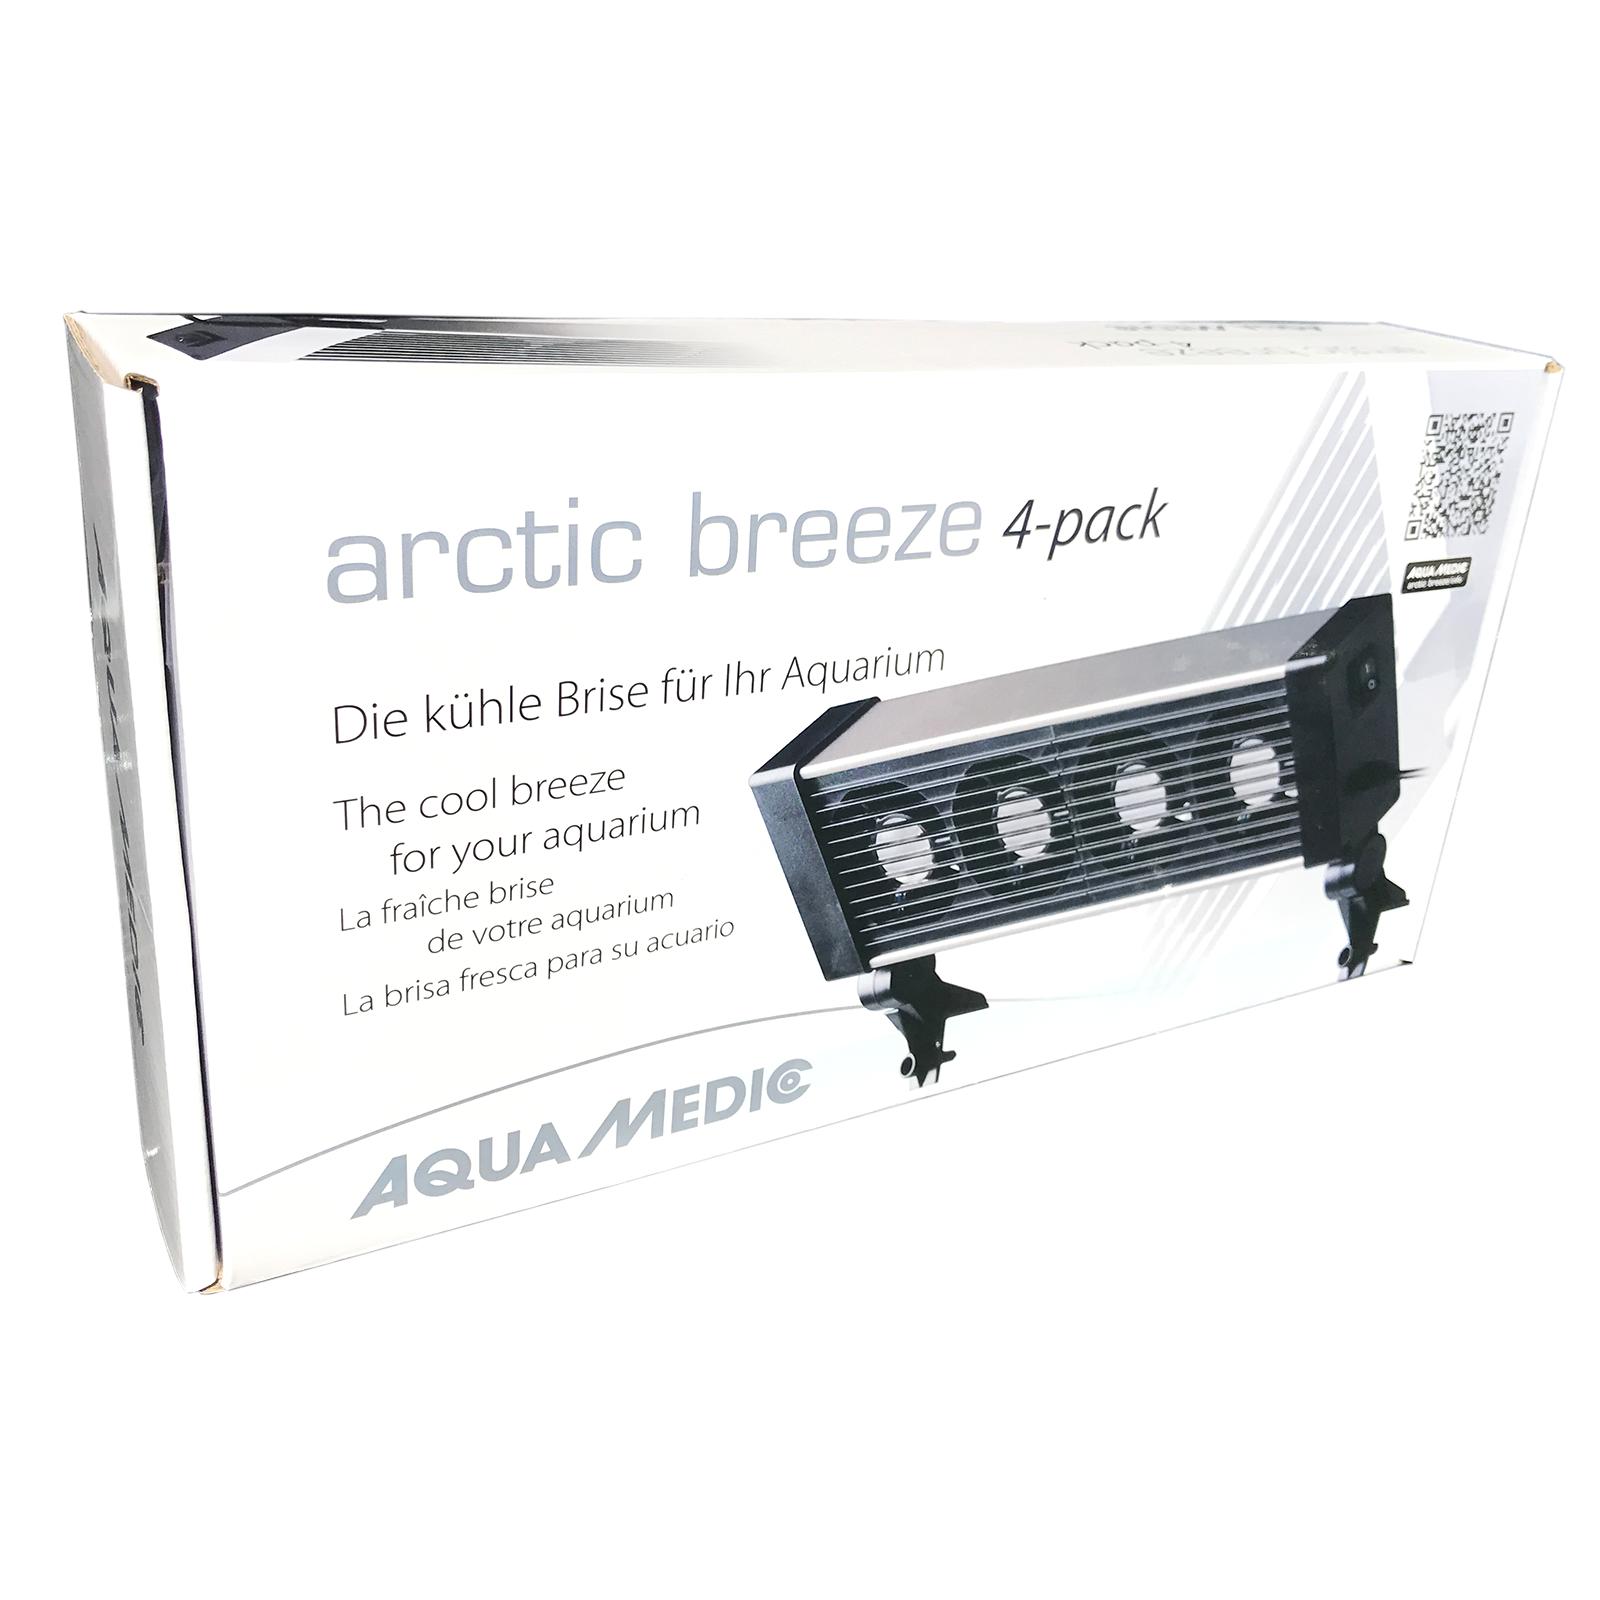 Вентилятор для акваріума Aqua Medic arctic breeze 4-pack 56556